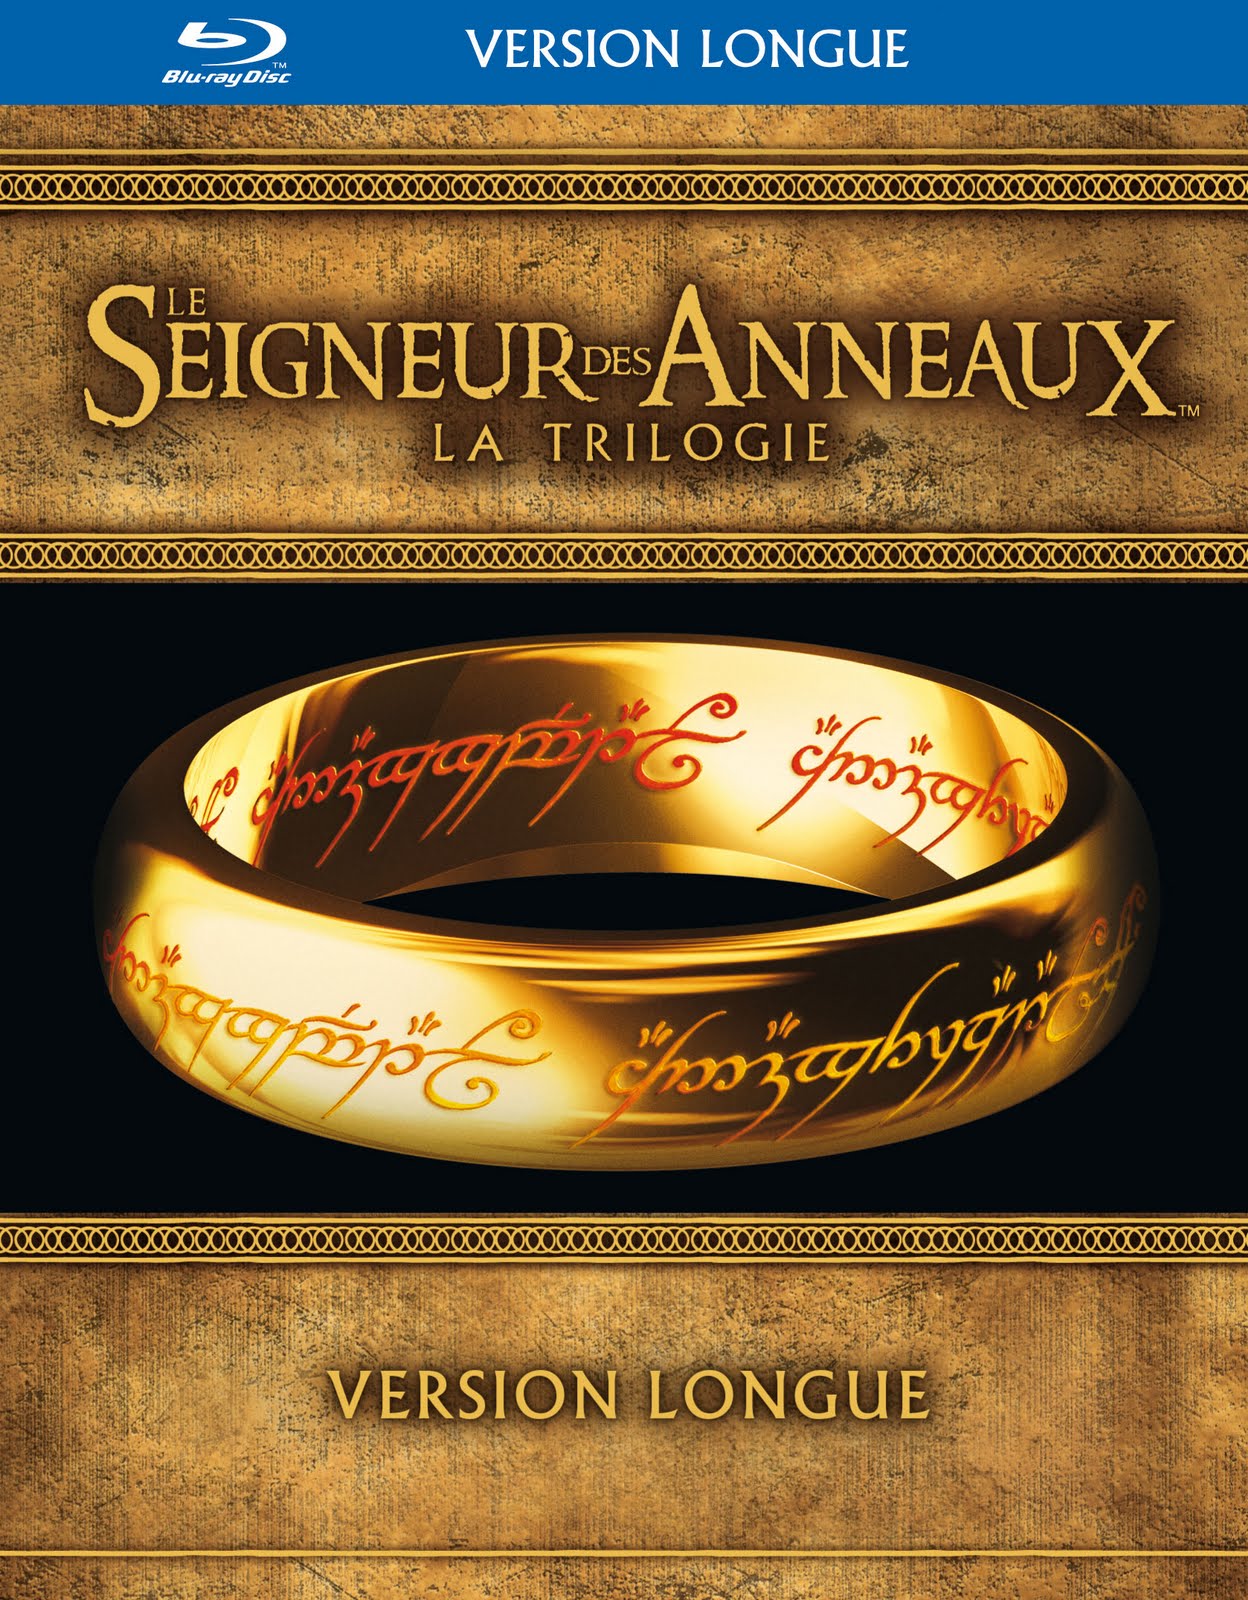 Trilogie Seigneur Des Anneaux Version Longue 1080p Resolution